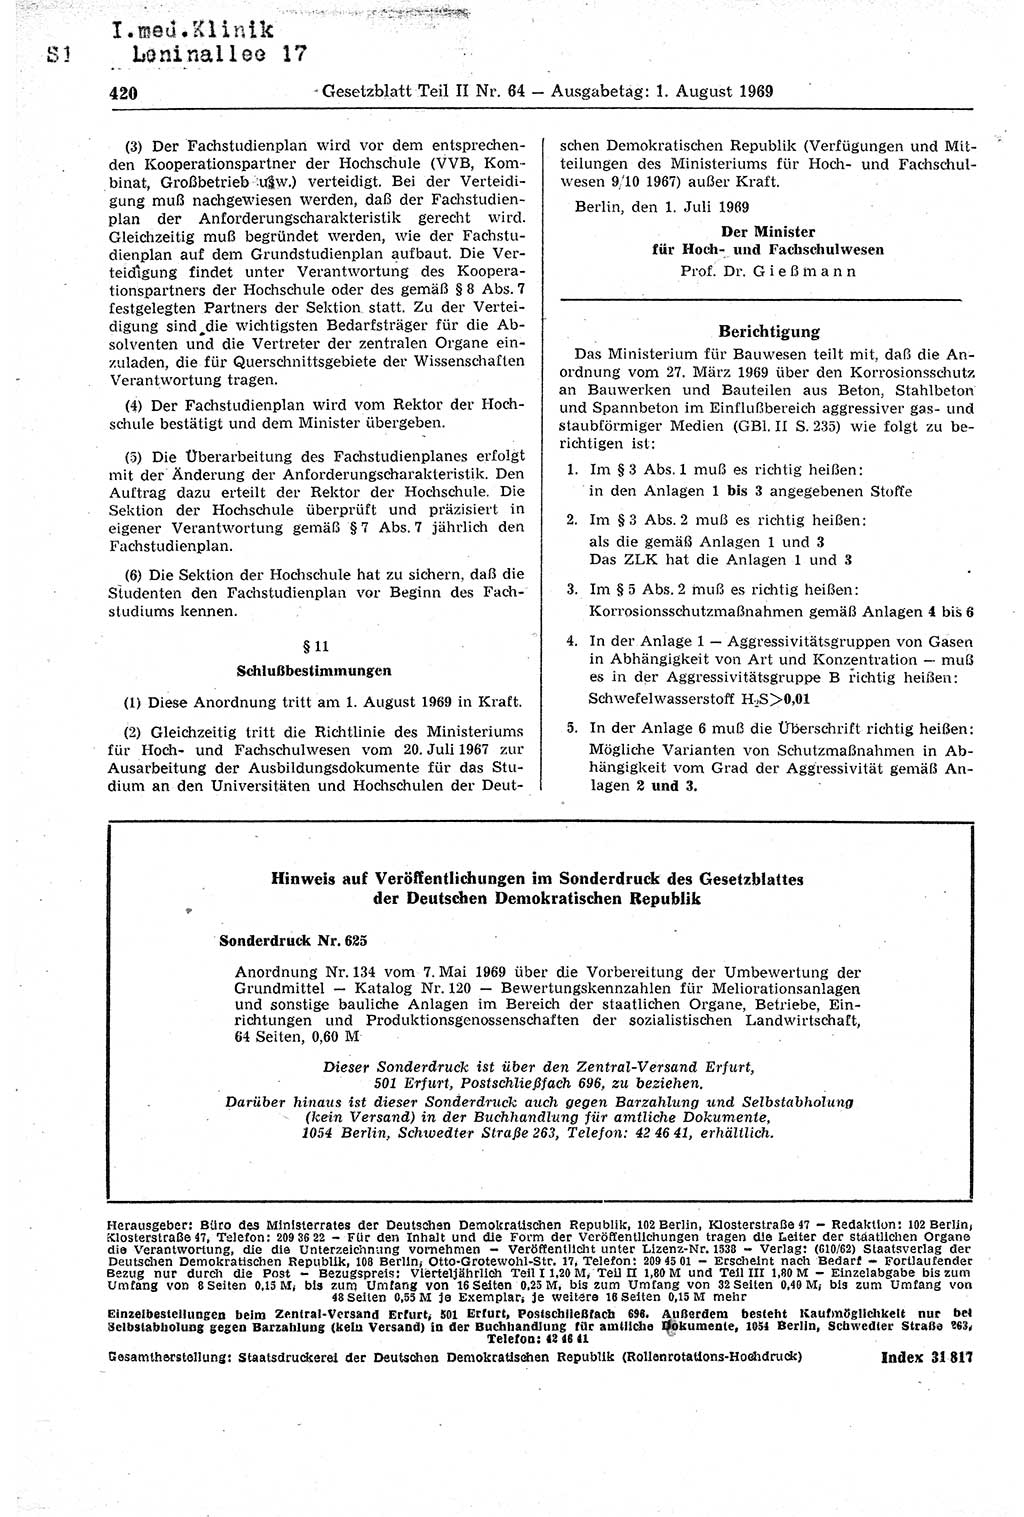 Gesetzblatt (GBl.) der Deutschen Demokratischen Republik (DDR) Teil ⅠⅠ 1969, Seite 420 (GBl. DDR ⅠⅠ 1969, S. 420)